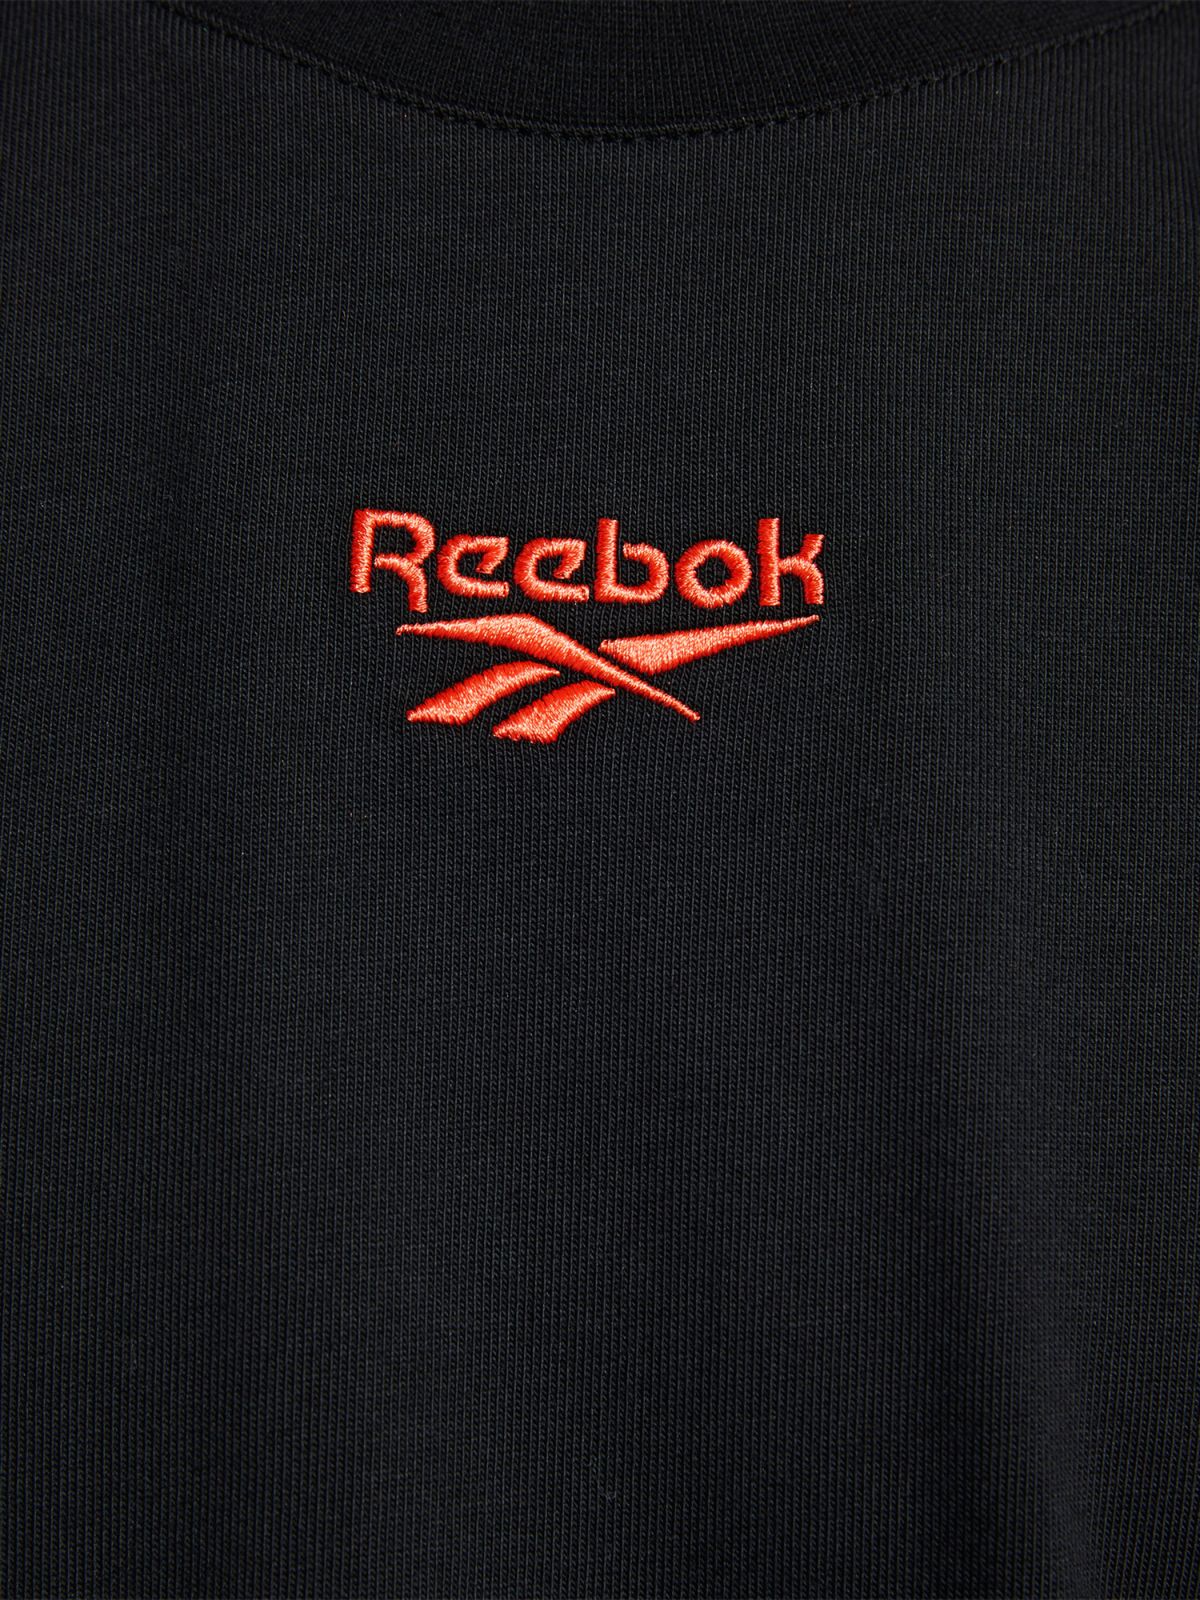  טי שירט עם הדפס לוגו של REEBOK